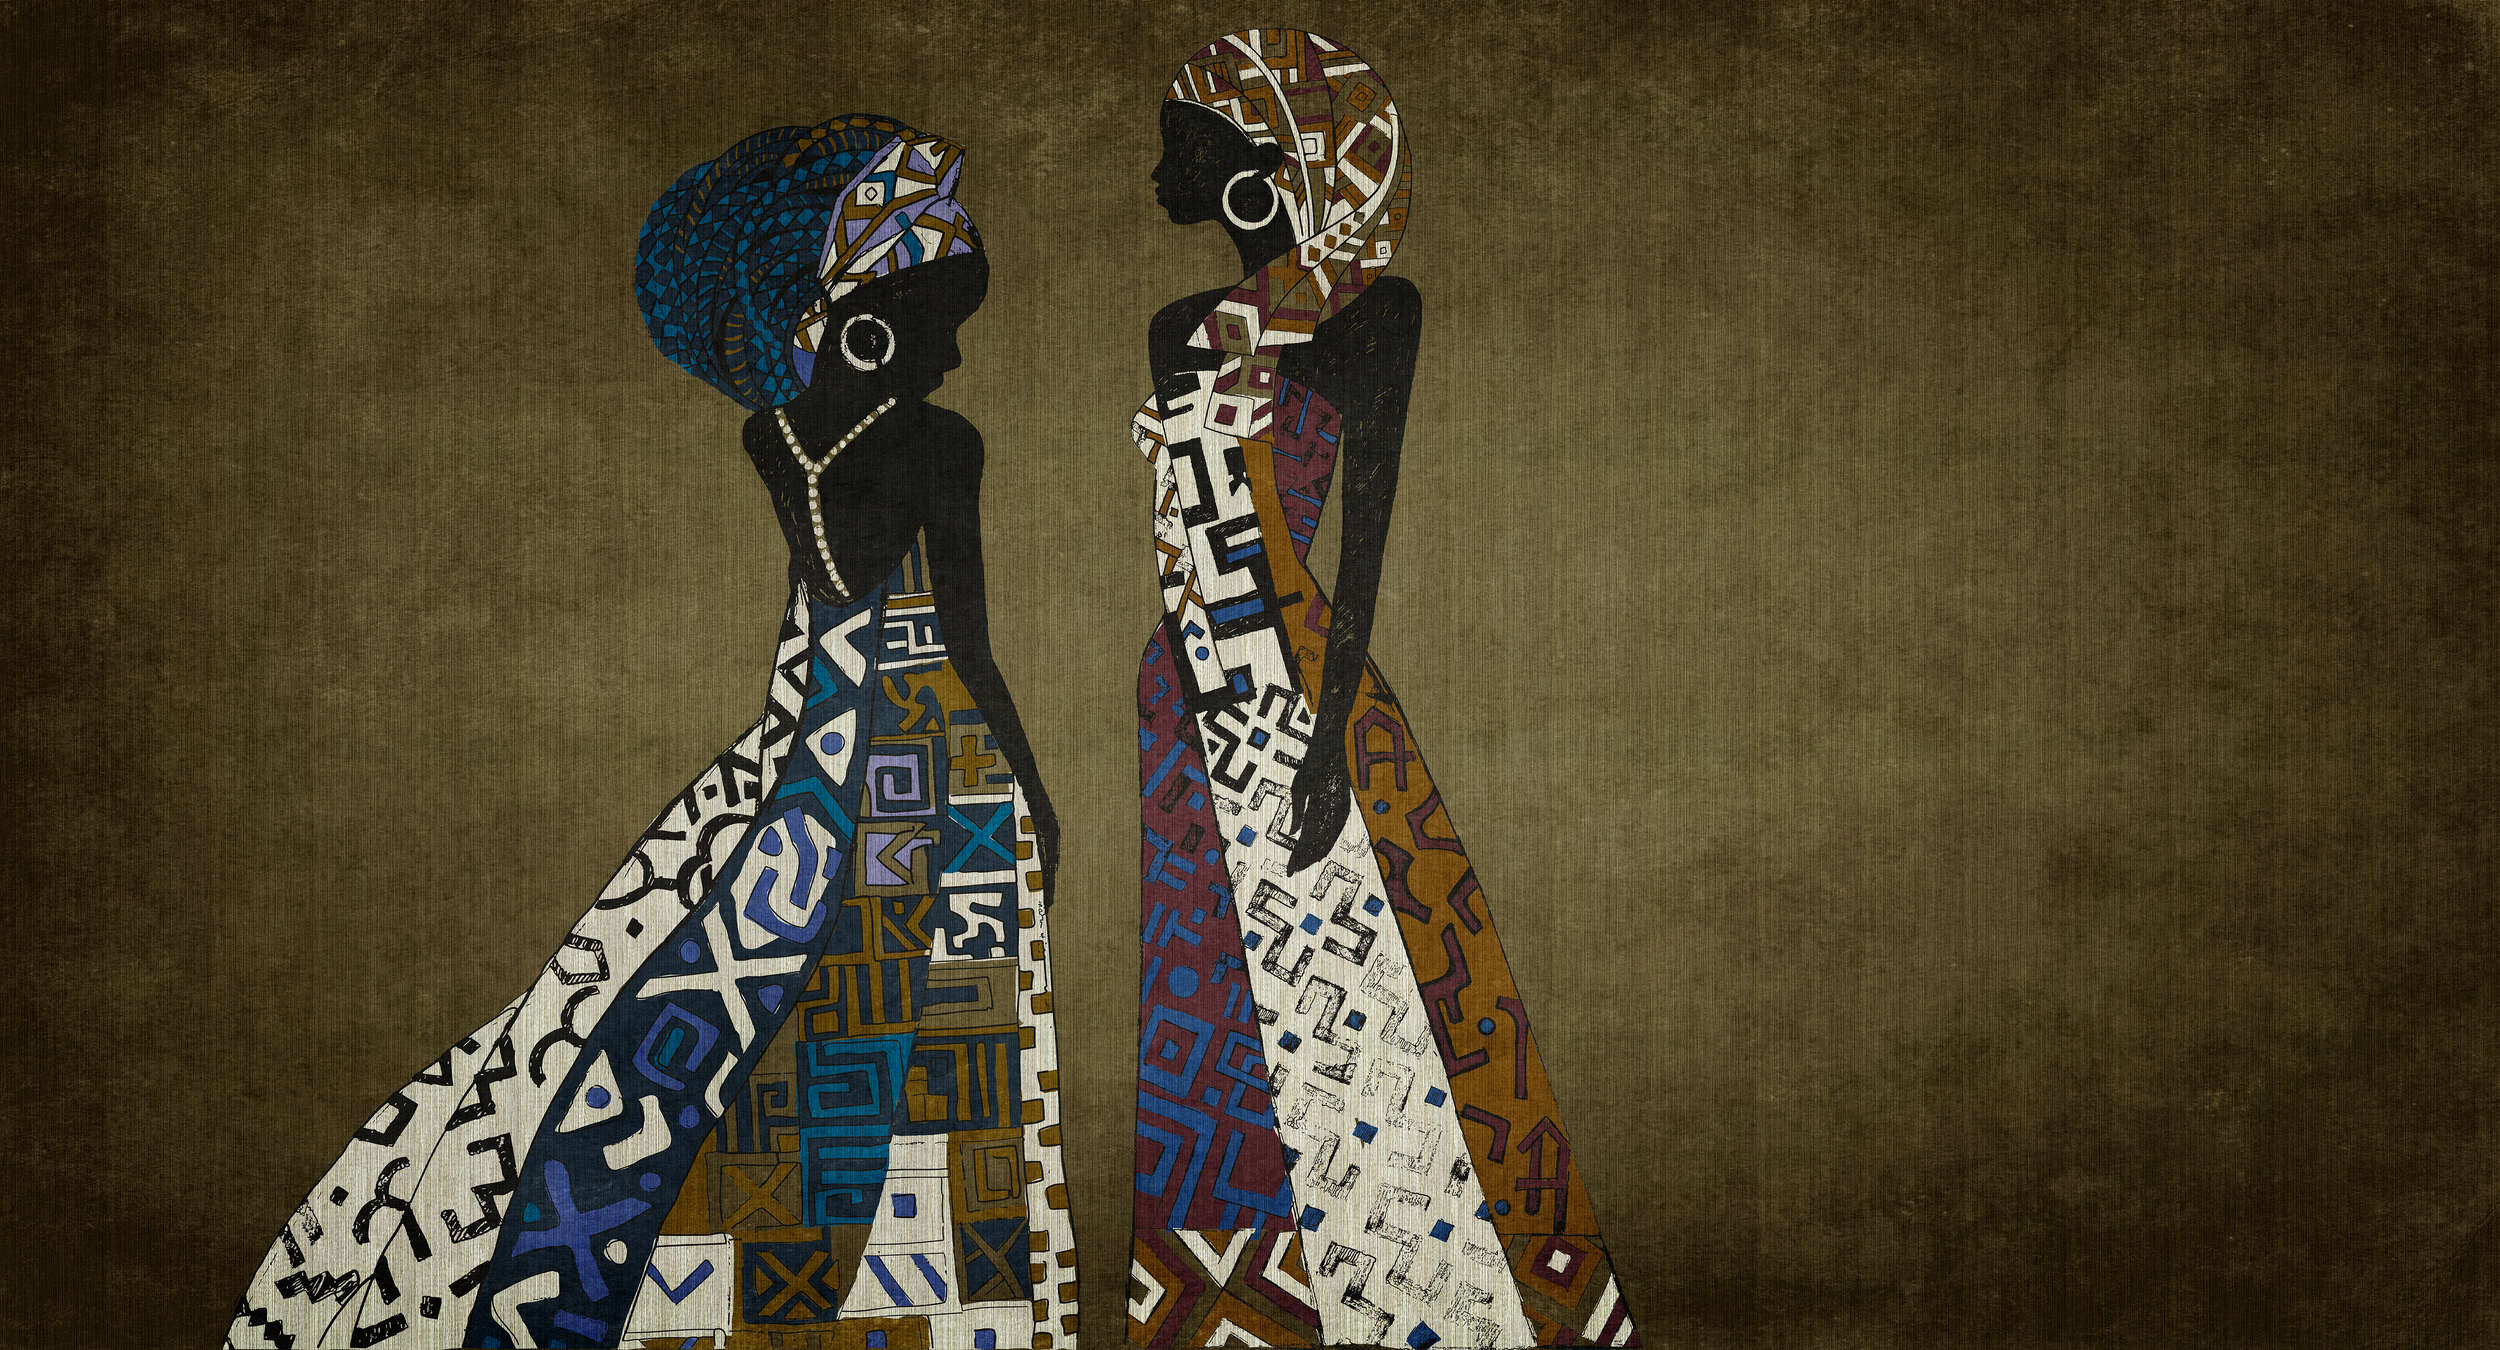             Nairobi 3 - Afrika foto behang jurk ontwerp met ethno patroon
        